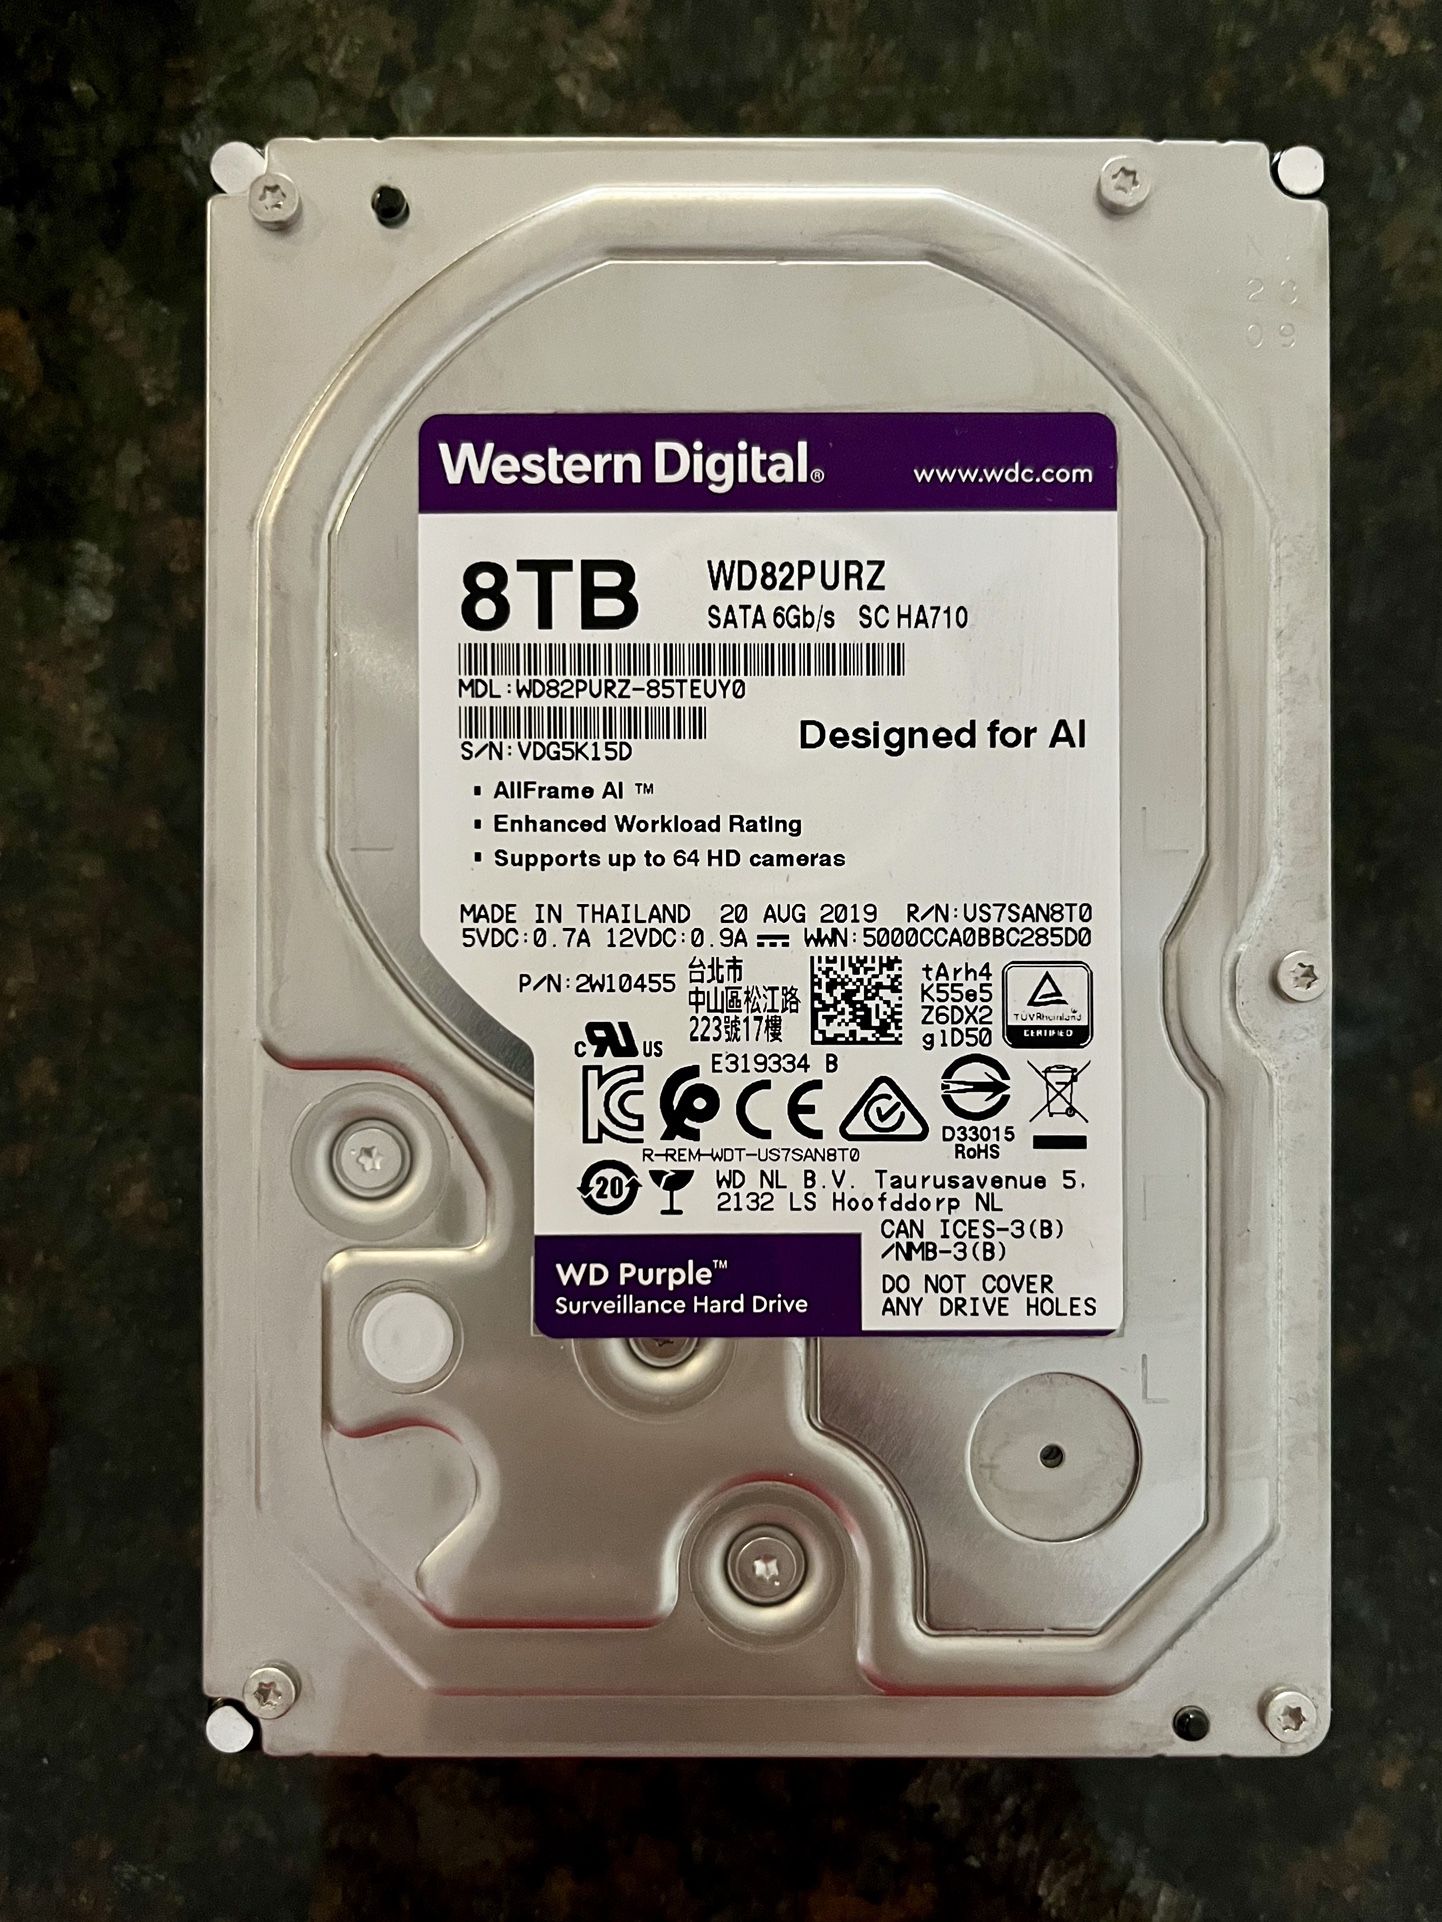 Western Digital 8TB WD Purple Surveillance Internal Hard Drive HDD - SATA 6 Gb/s, 256 MB Cache, 3.5"